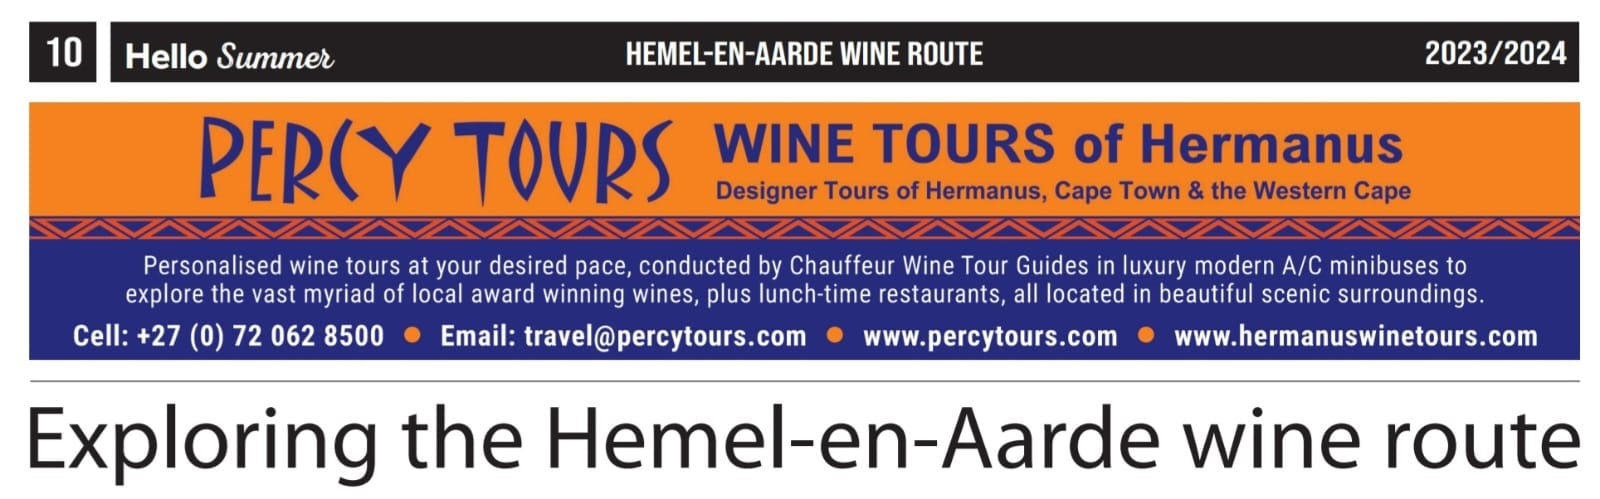 Summer guide to Hermanus wine route Hemel-en-Aarde - Dec 2023